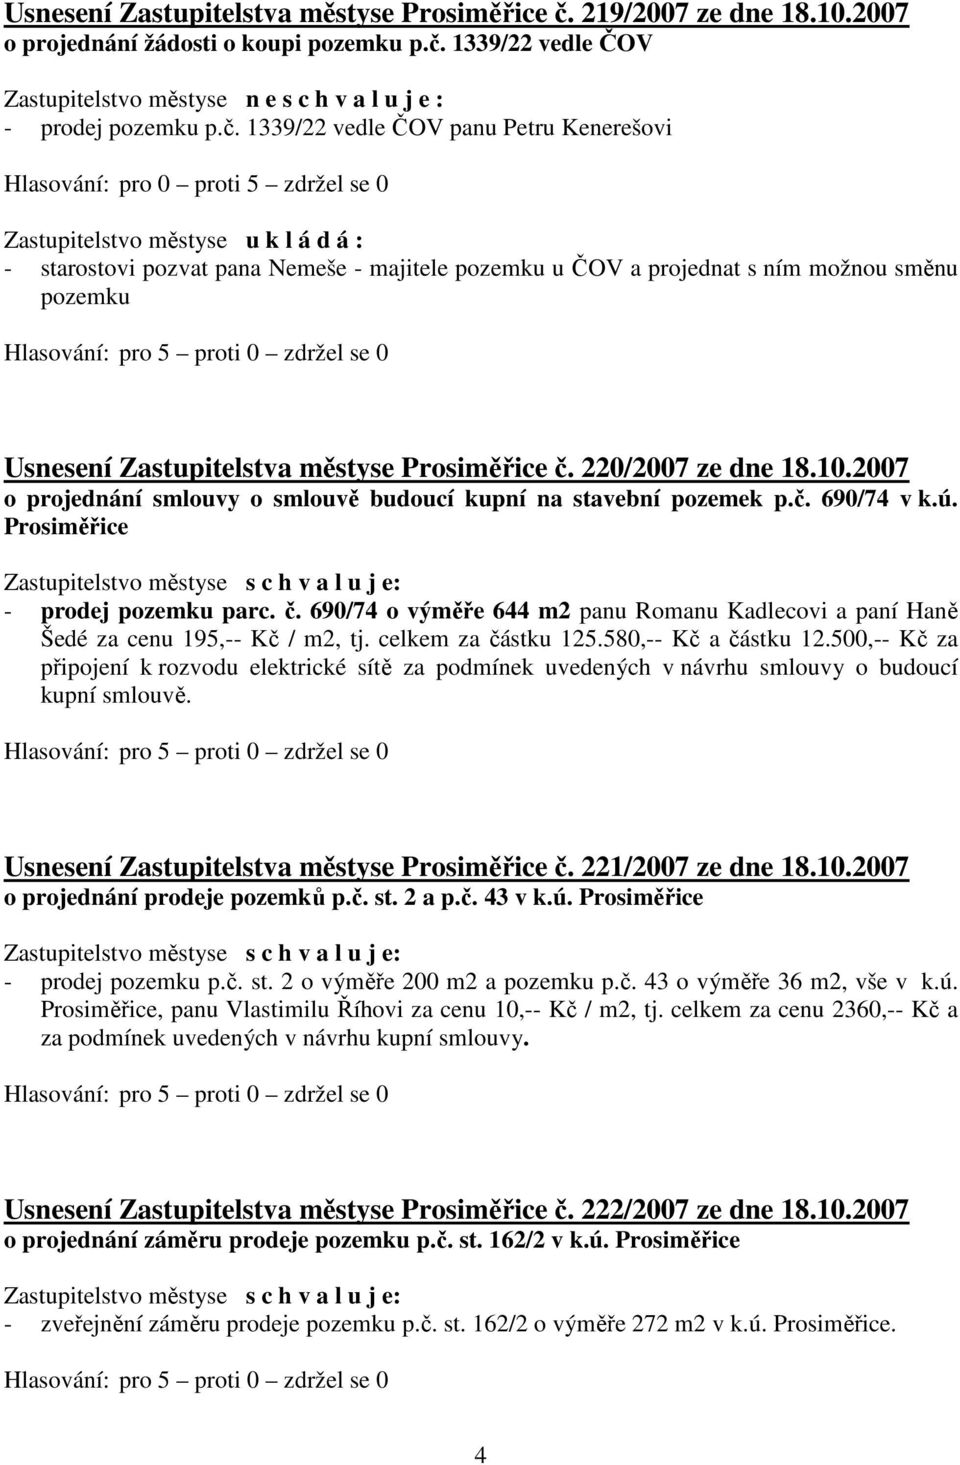 směnu pozemku Usnesení Zastupitelstva městyse Prosiměřice č. 220/2007 ze dne 18.10.2007 o projednání smlouvy o smlouvě budoucí kupní na stavební pozemek p.č. 690/74 v k.ú.